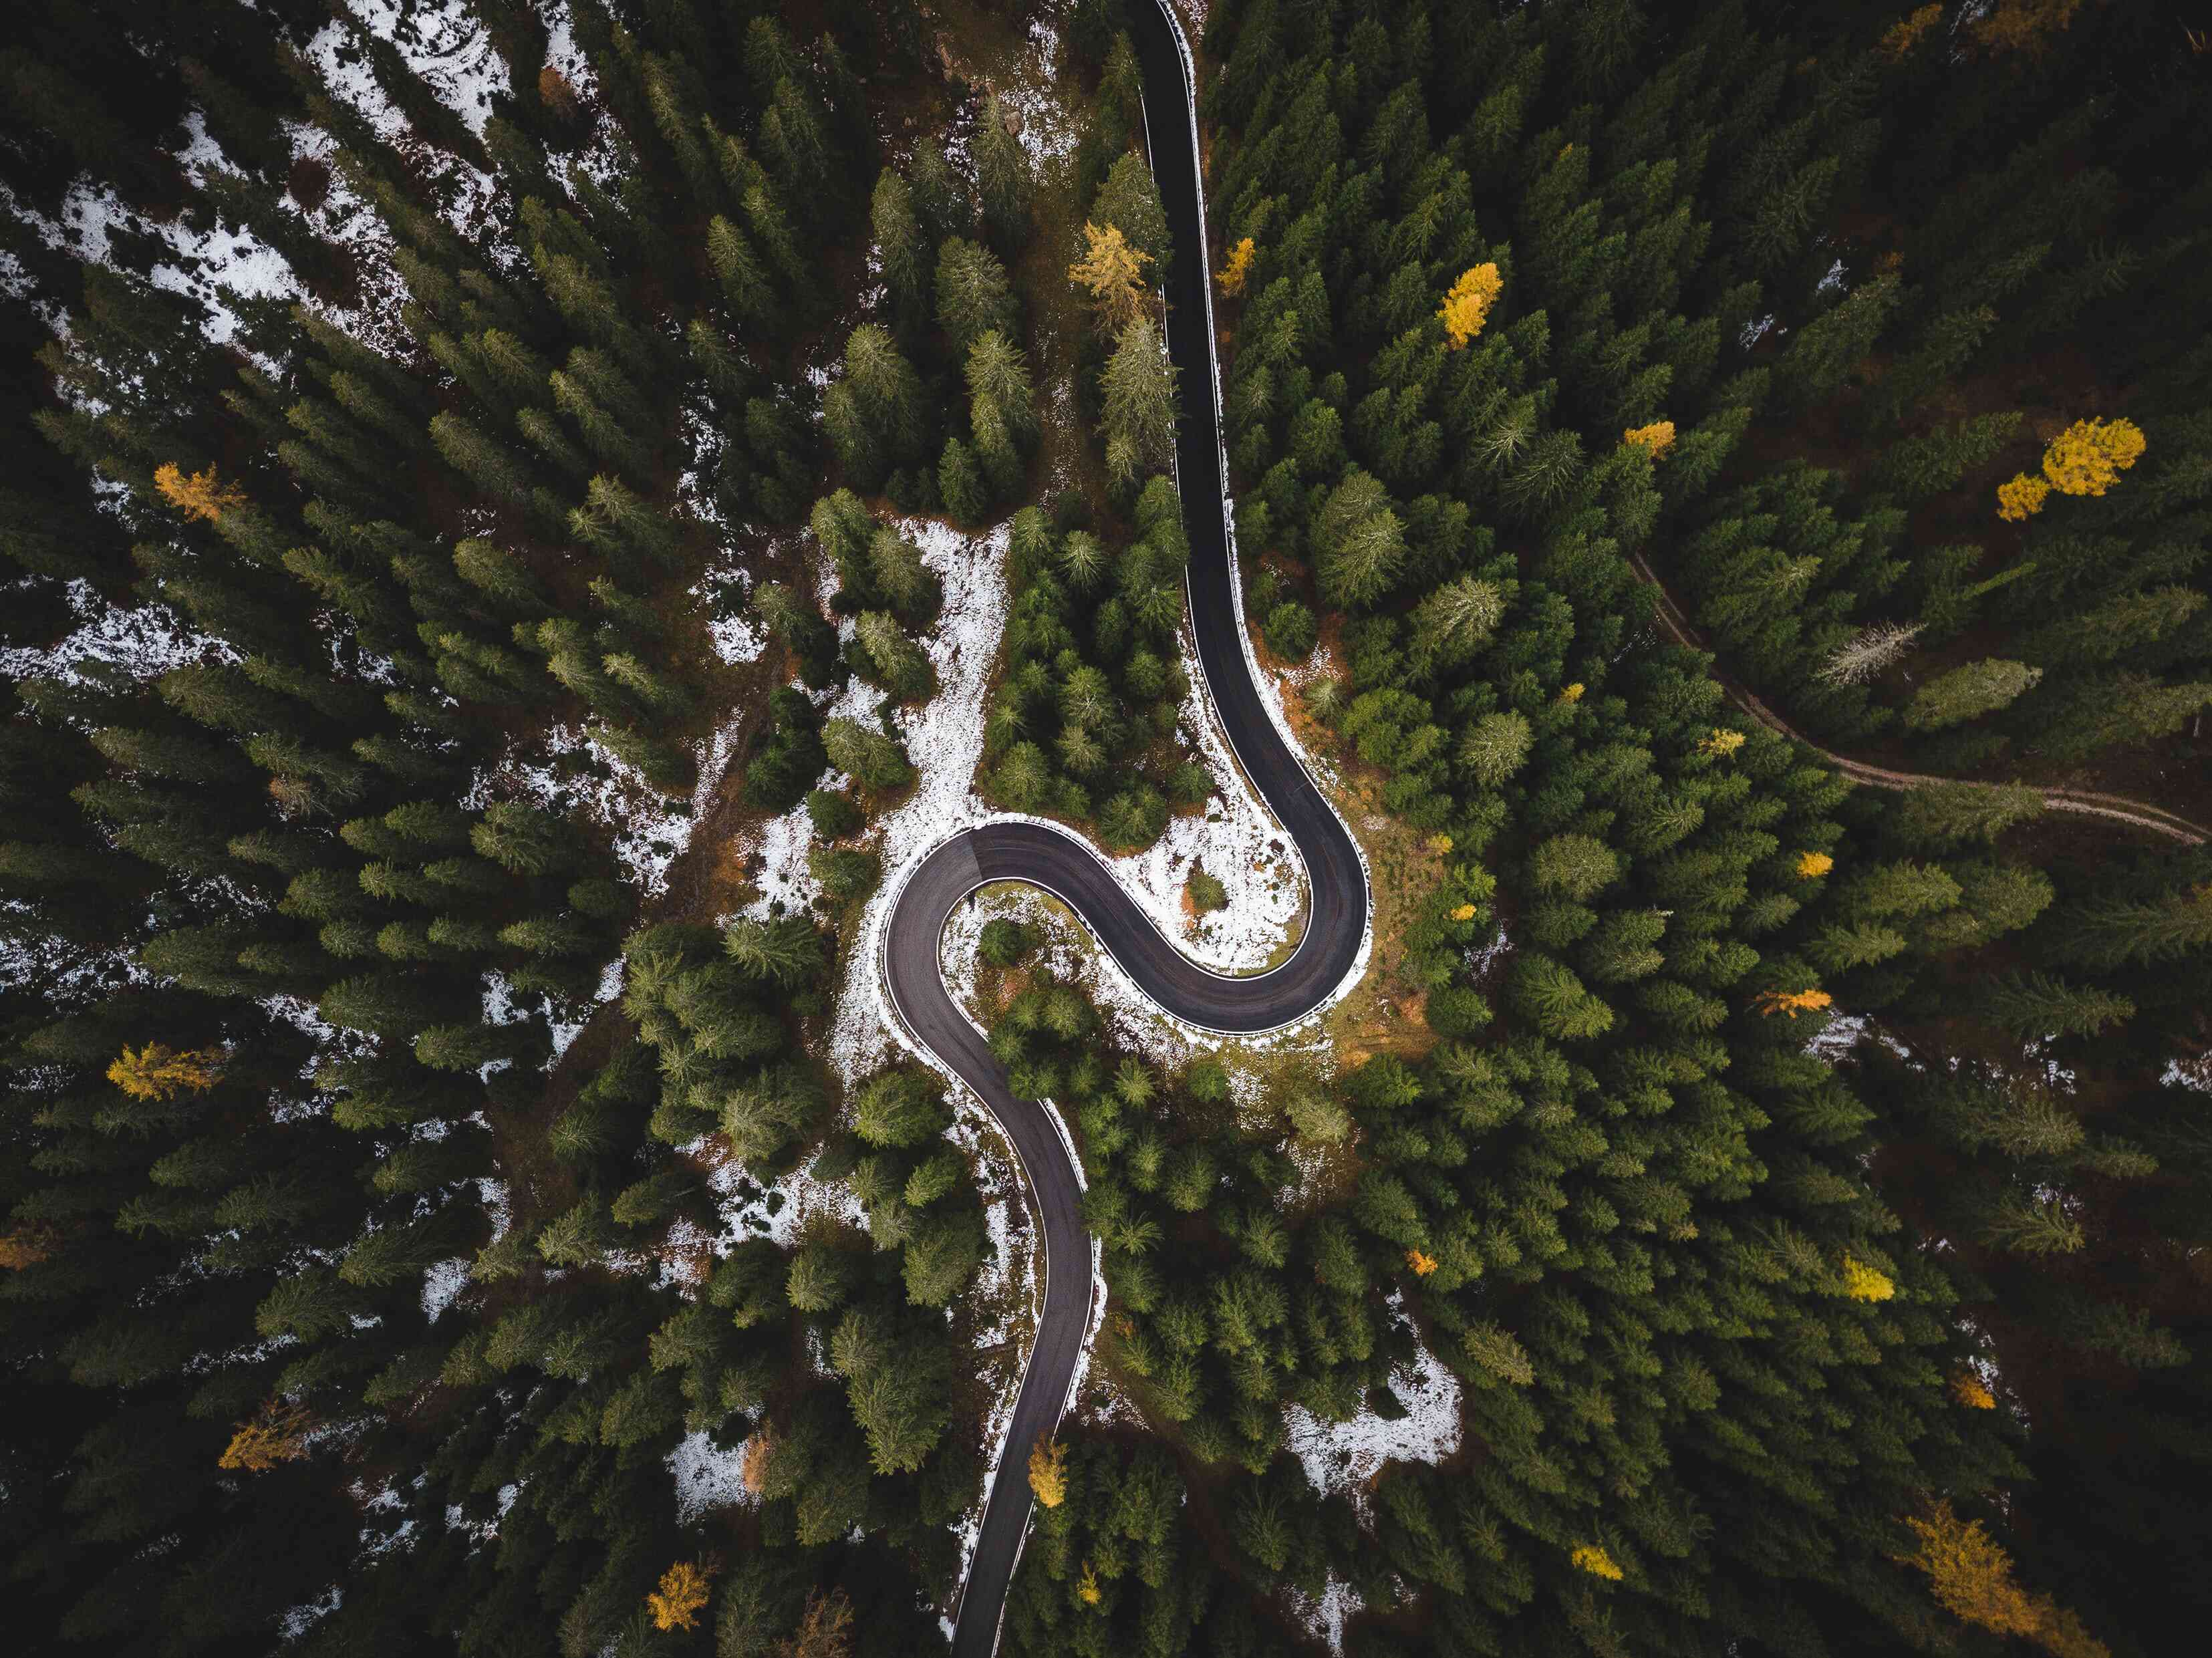 curvy road in between trees